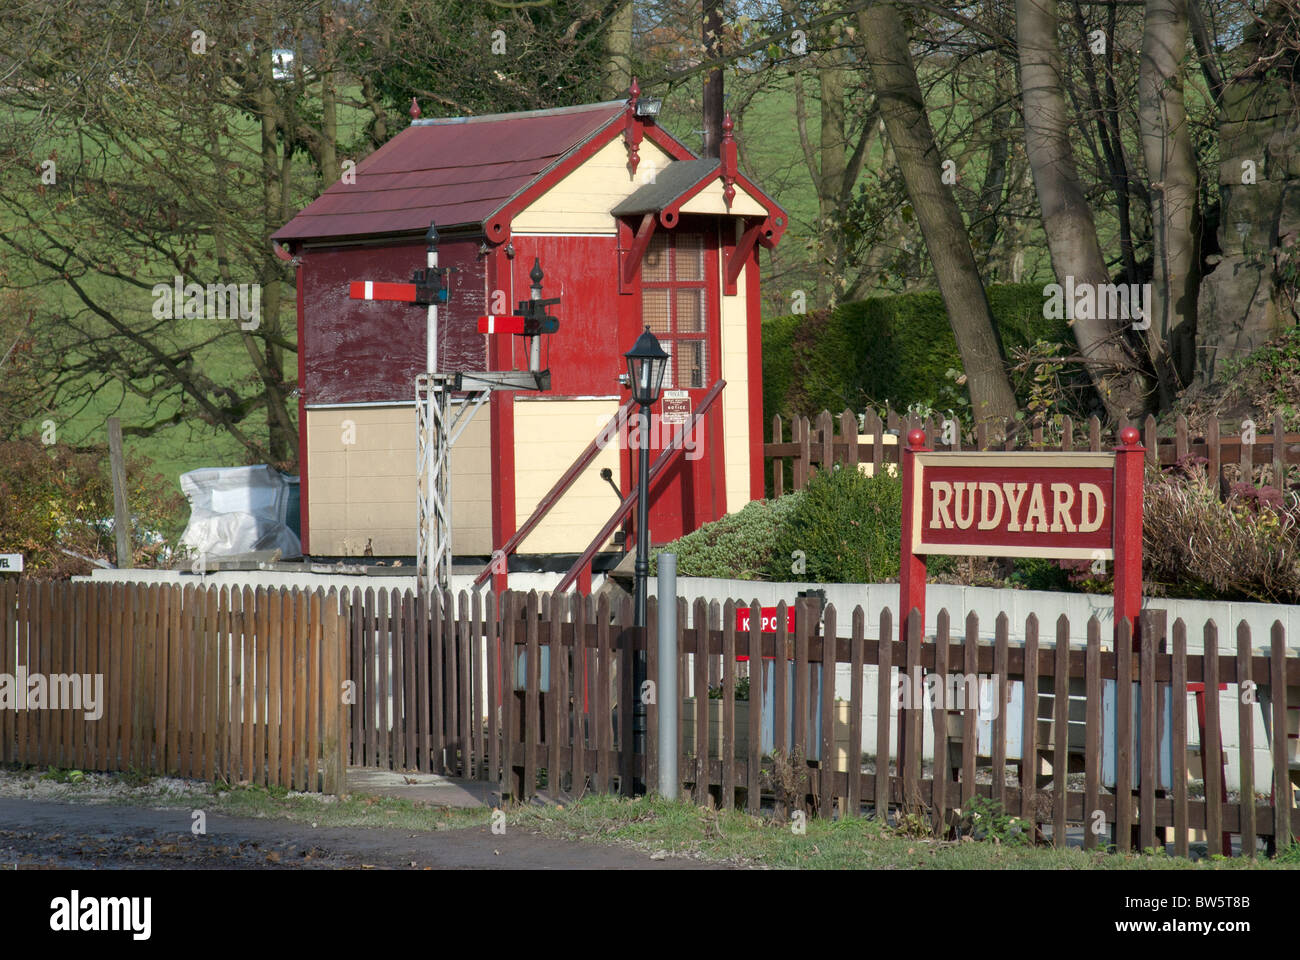 Rudyard Lago Estación de tren en miniatura, Staffordshire Foto de stock